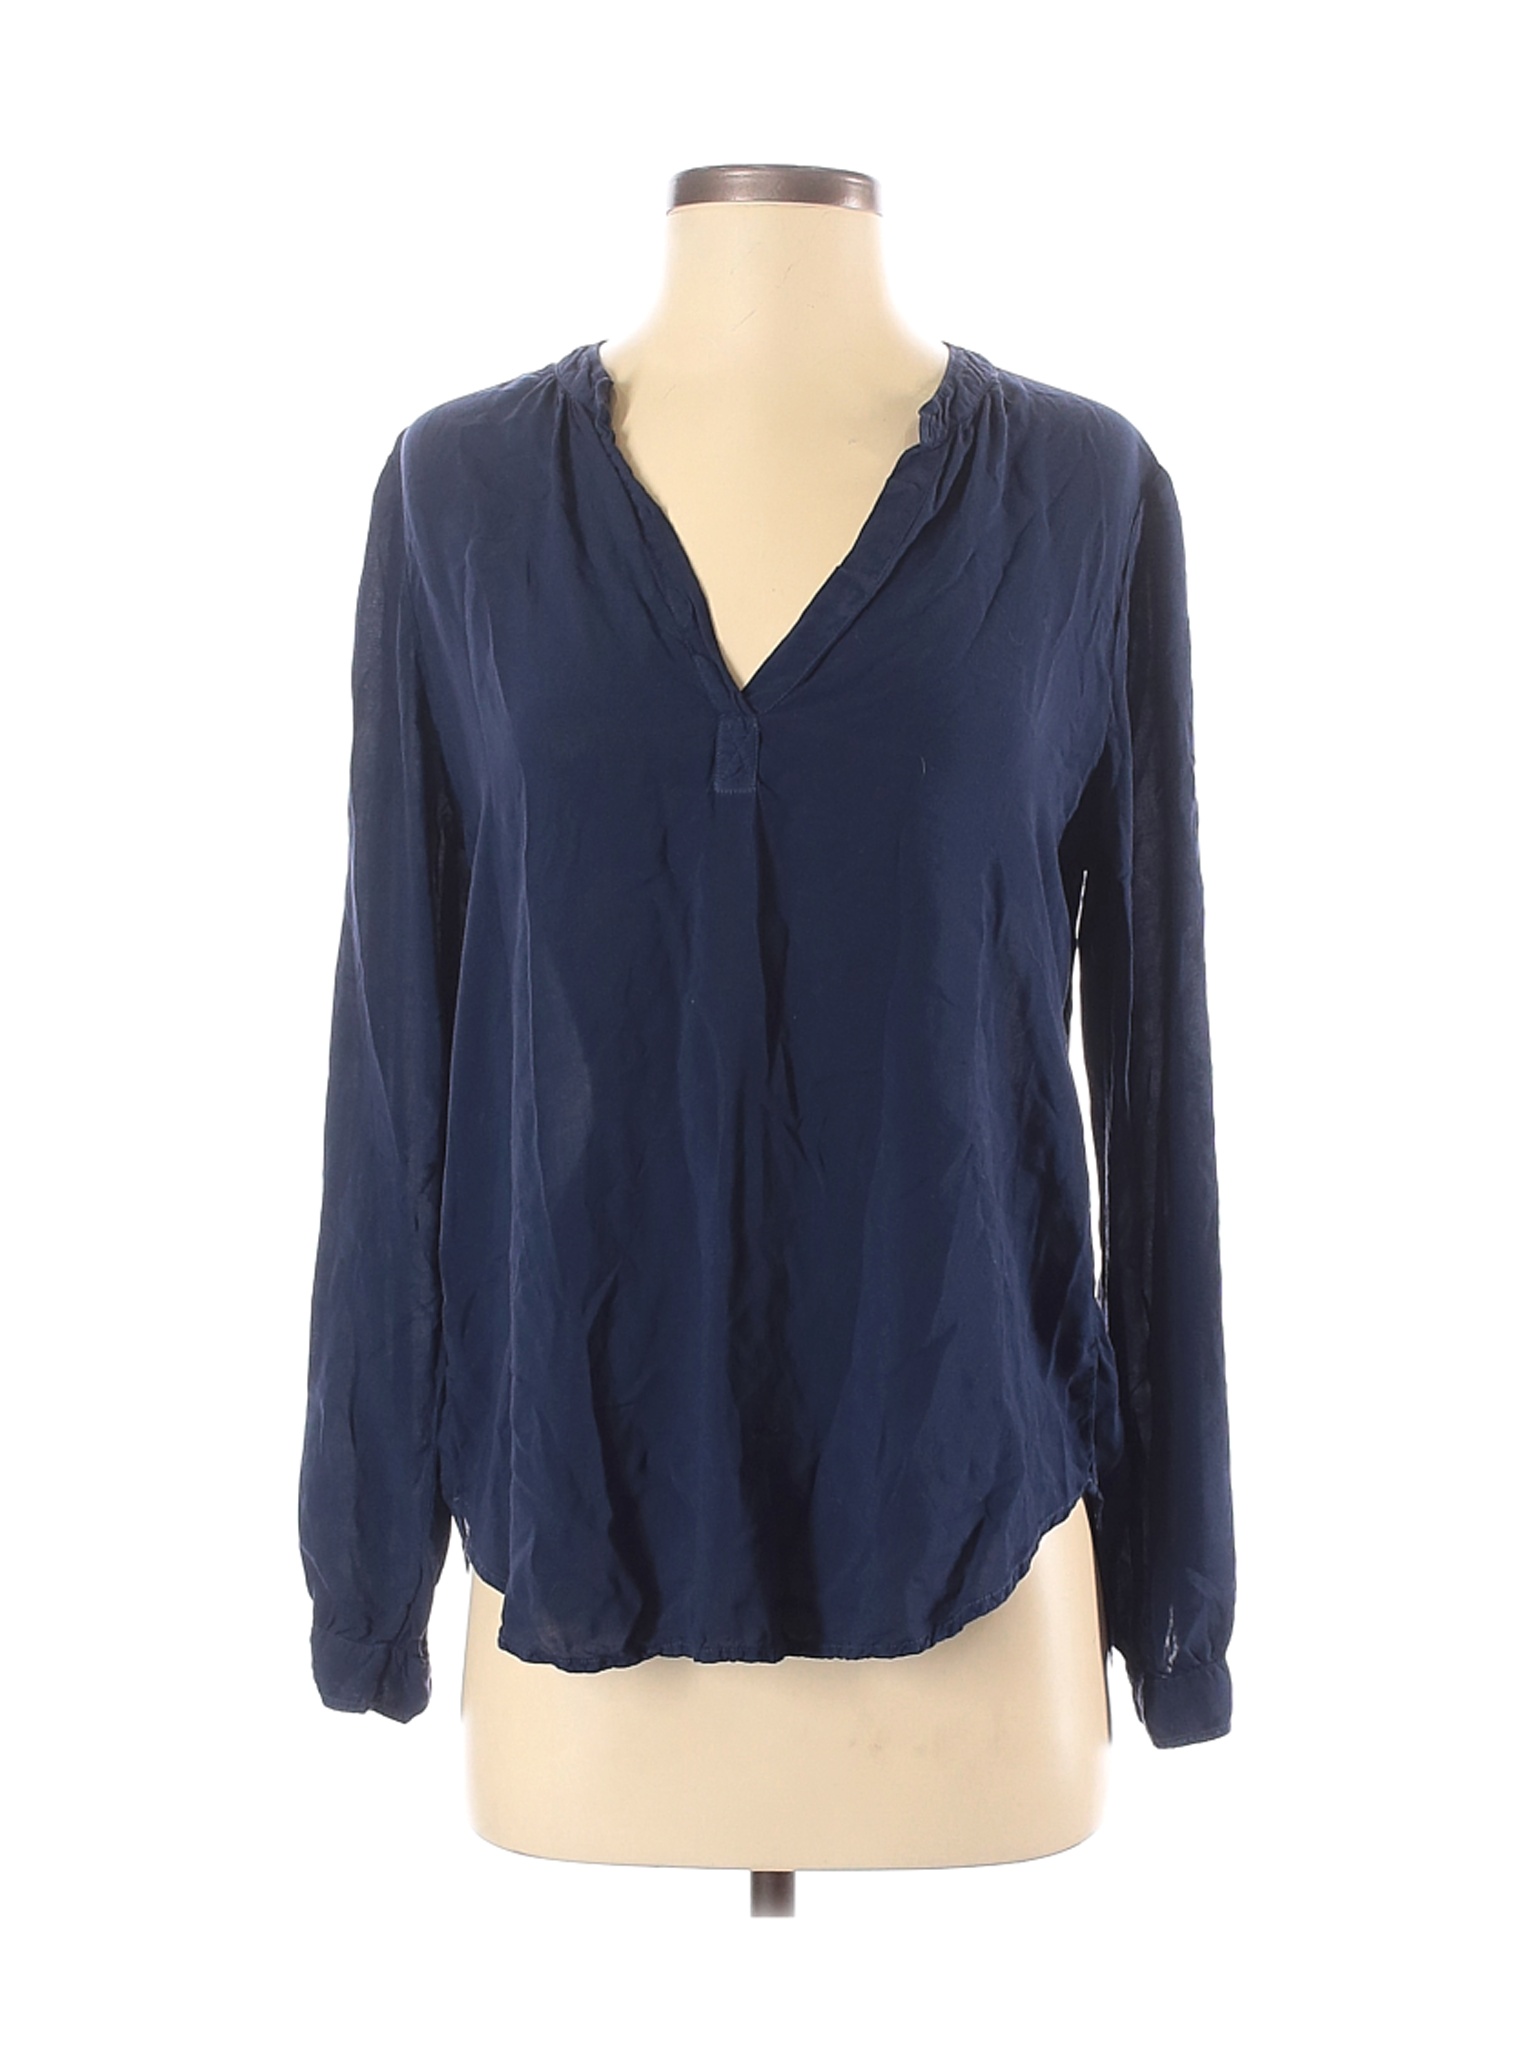 Velvet Women Blue Long Sleeve Blouse XS | eBay